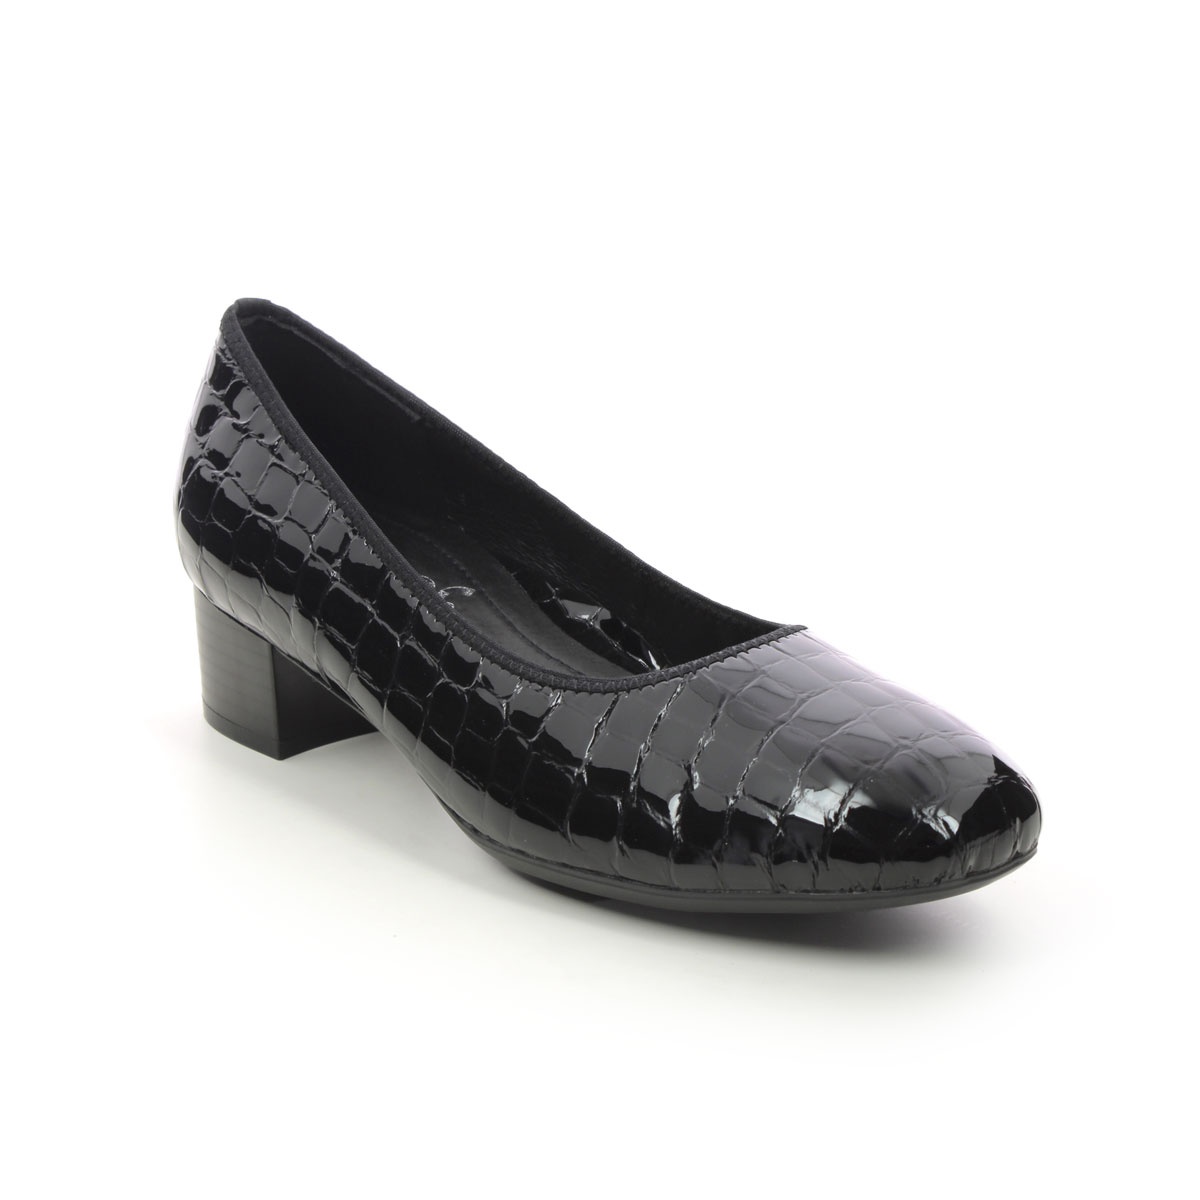 Rieker Develop Graco Black Croc Womens Court Shoes 49260-02 In Size 41 In Plain Black Croc Effect